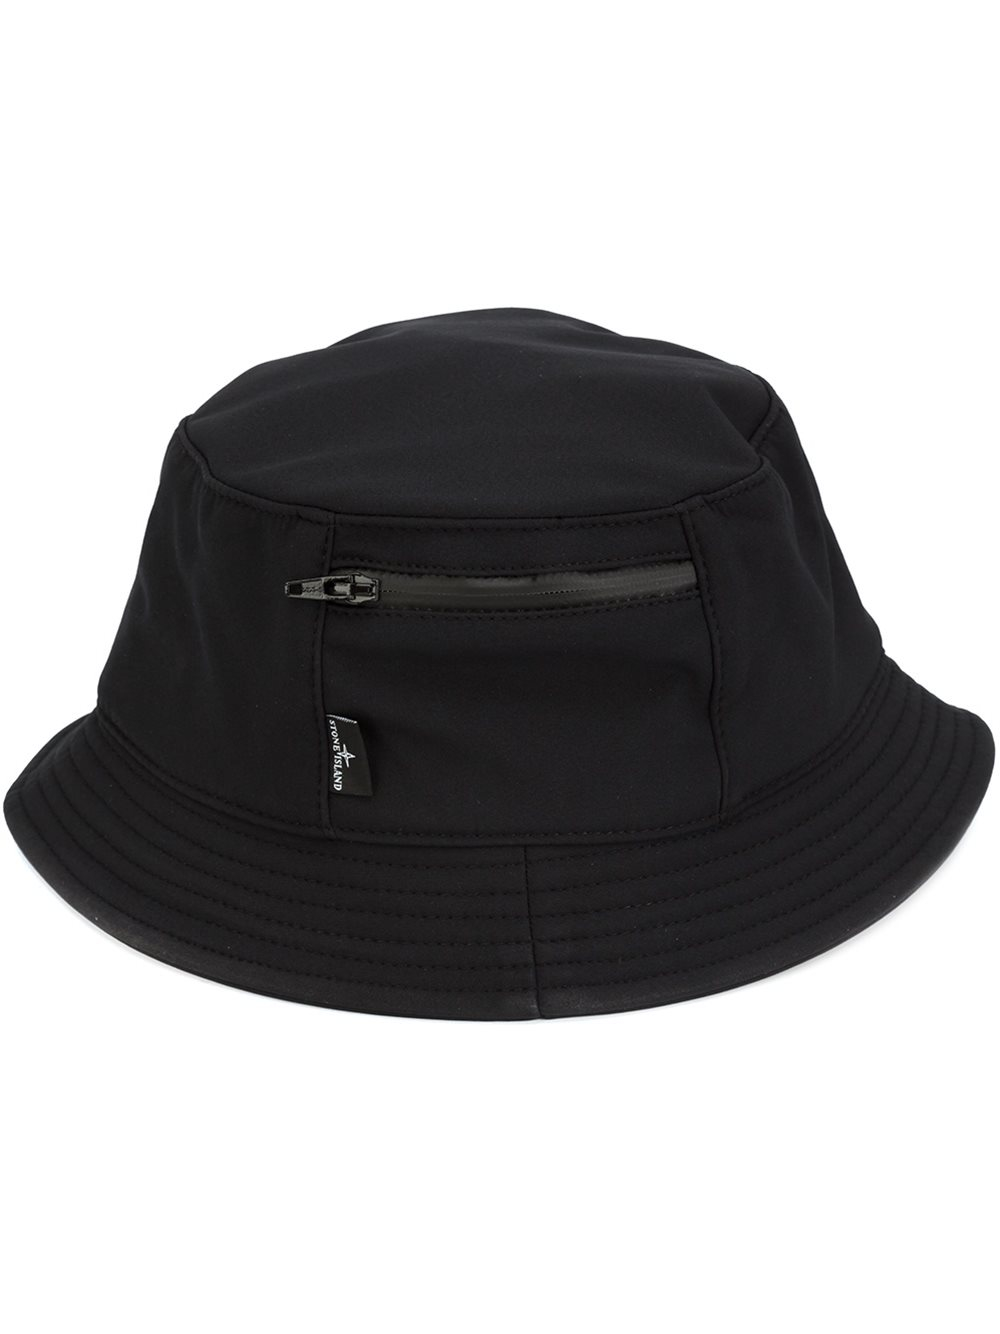 Stone Island Bucket Hat in Black for Men | Lyst UK